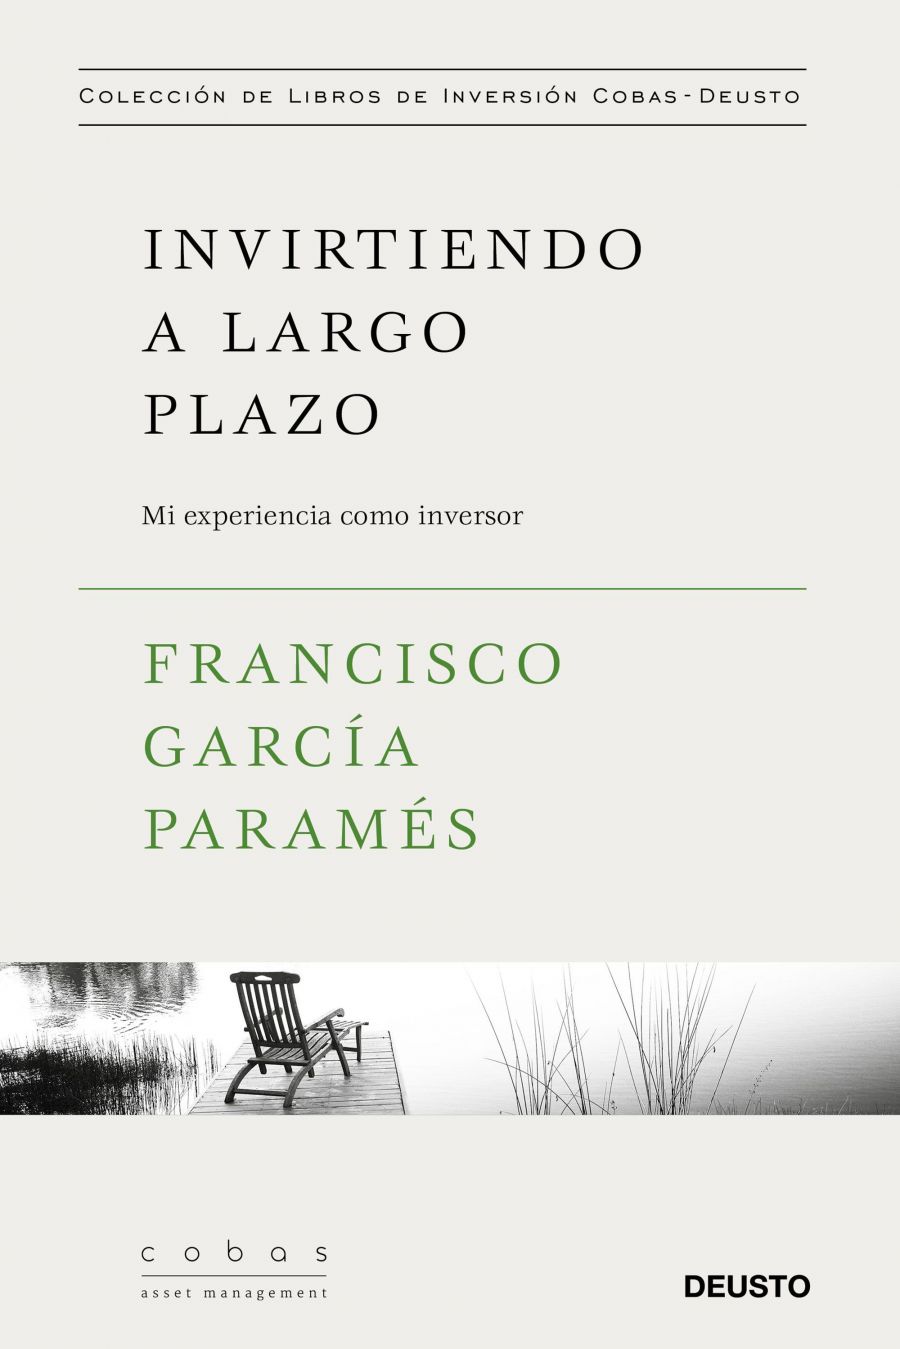 Invirtiendo a largo plazo (Francisco García Paramés)